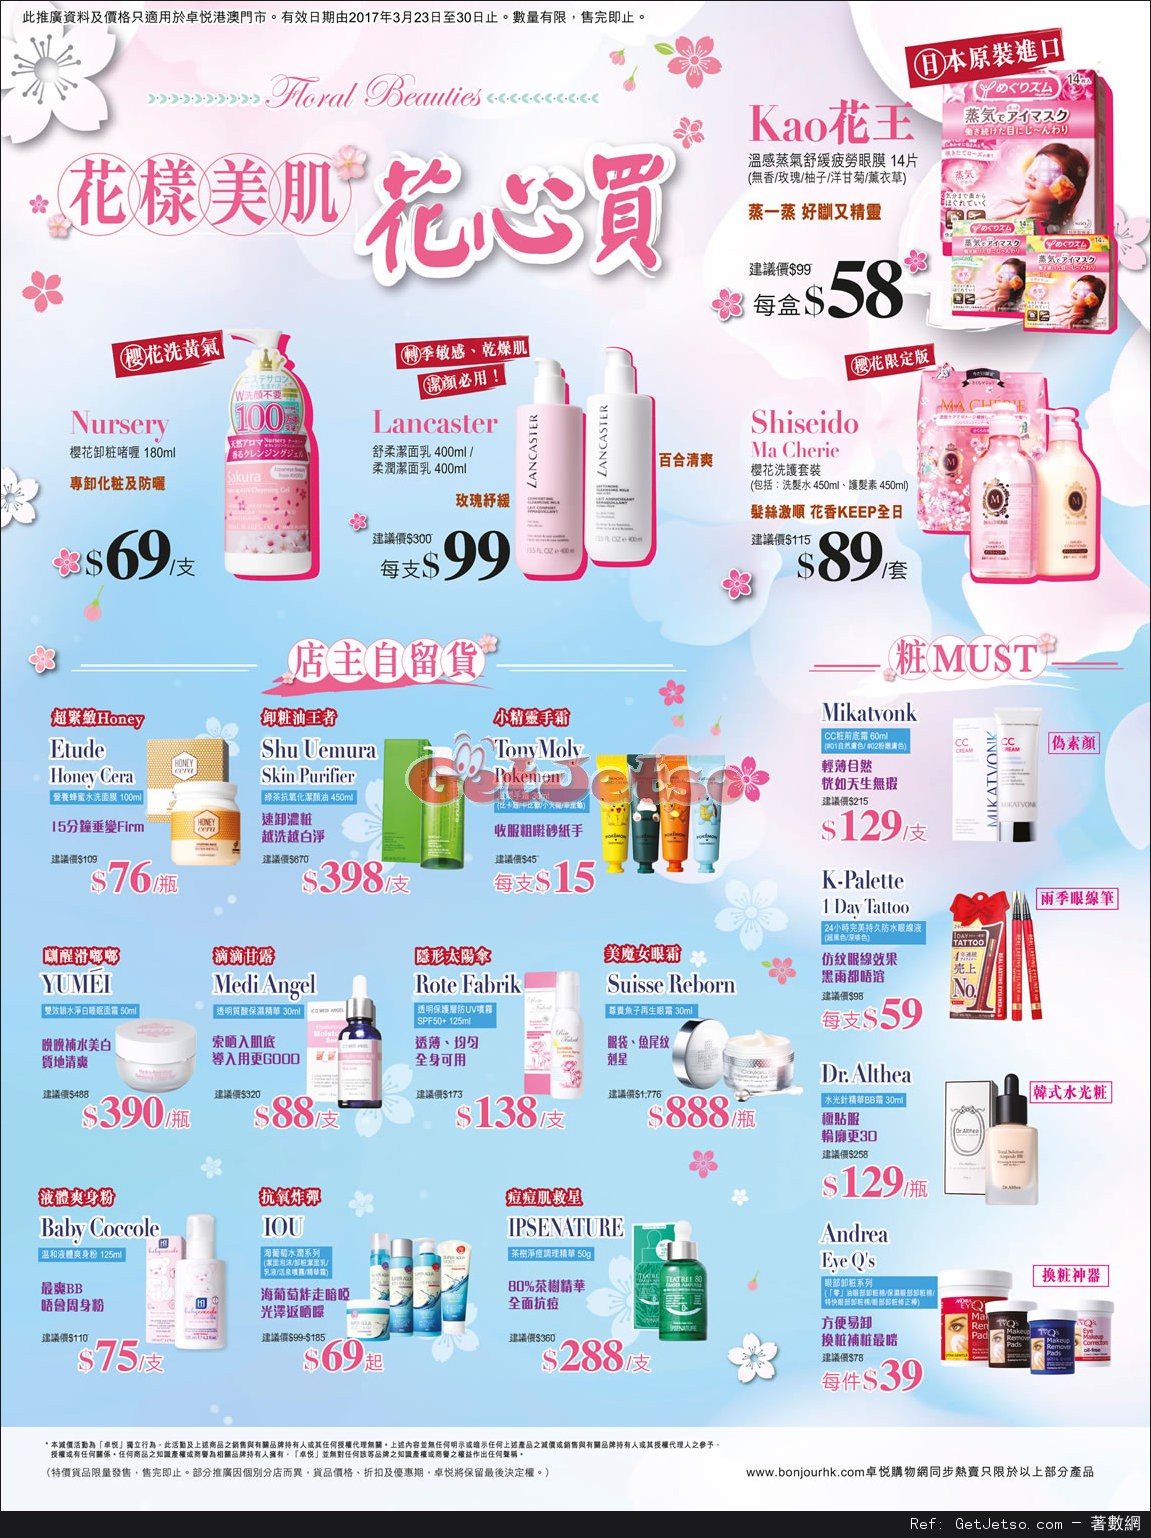 卓悅最新化妝品購物優惠(至17年3月30日)圖片1